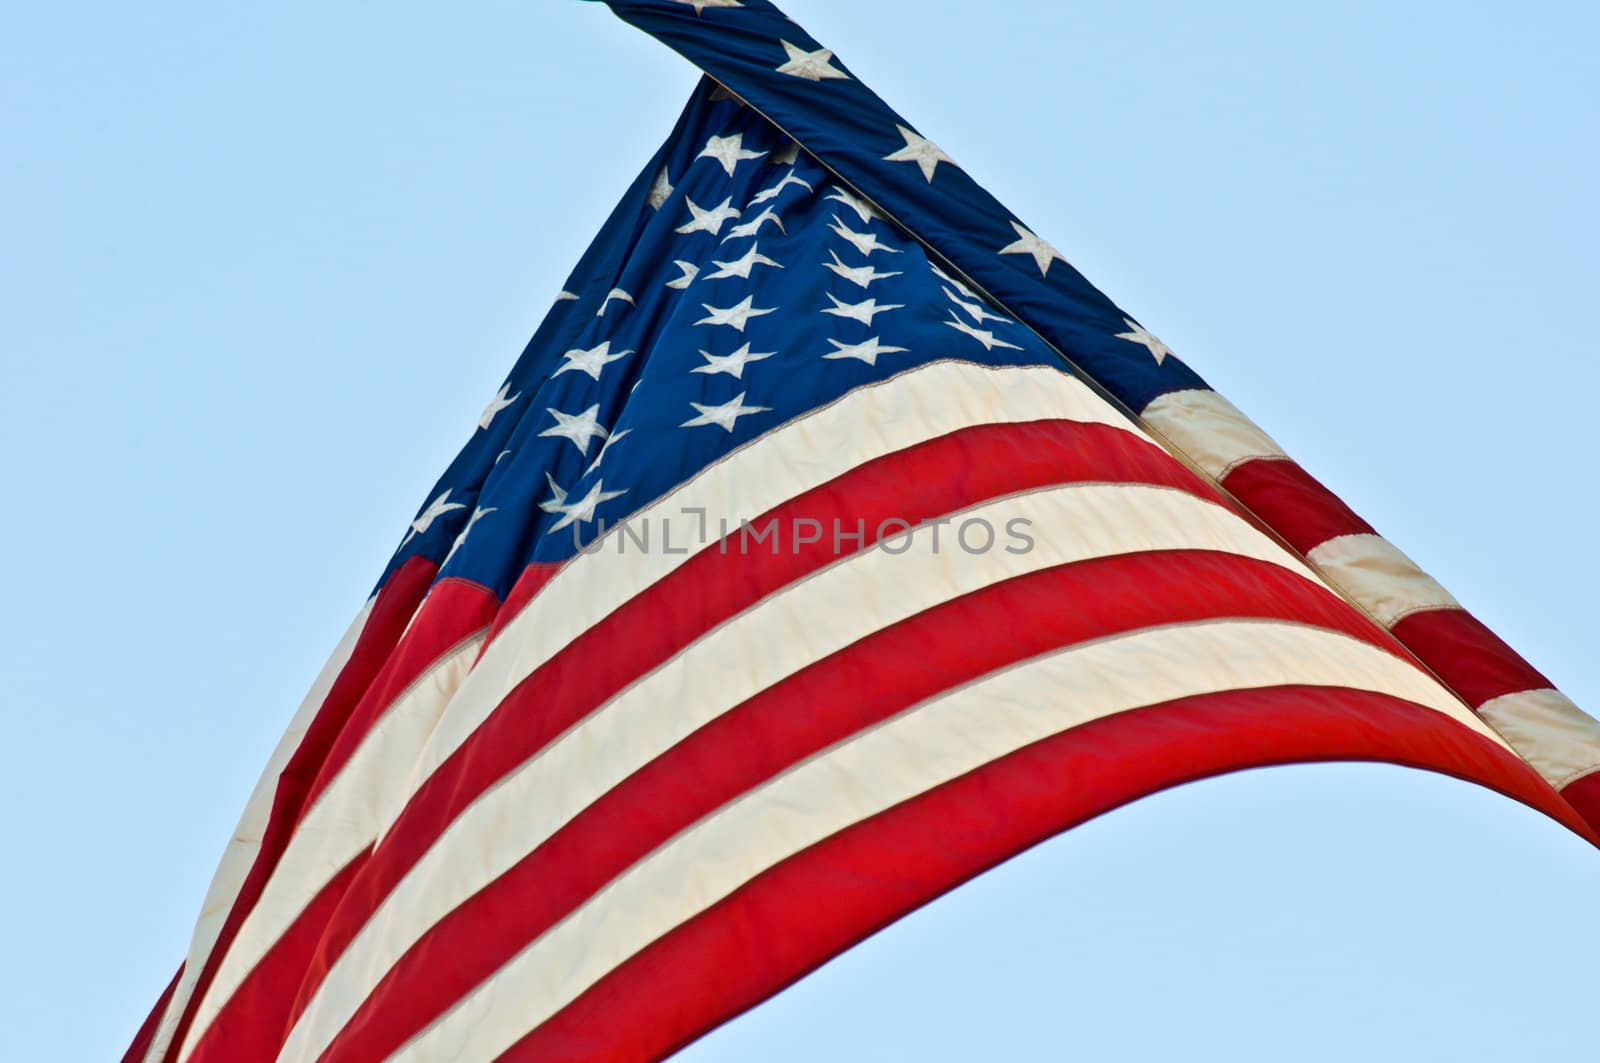 American flag by Jule_Berlin